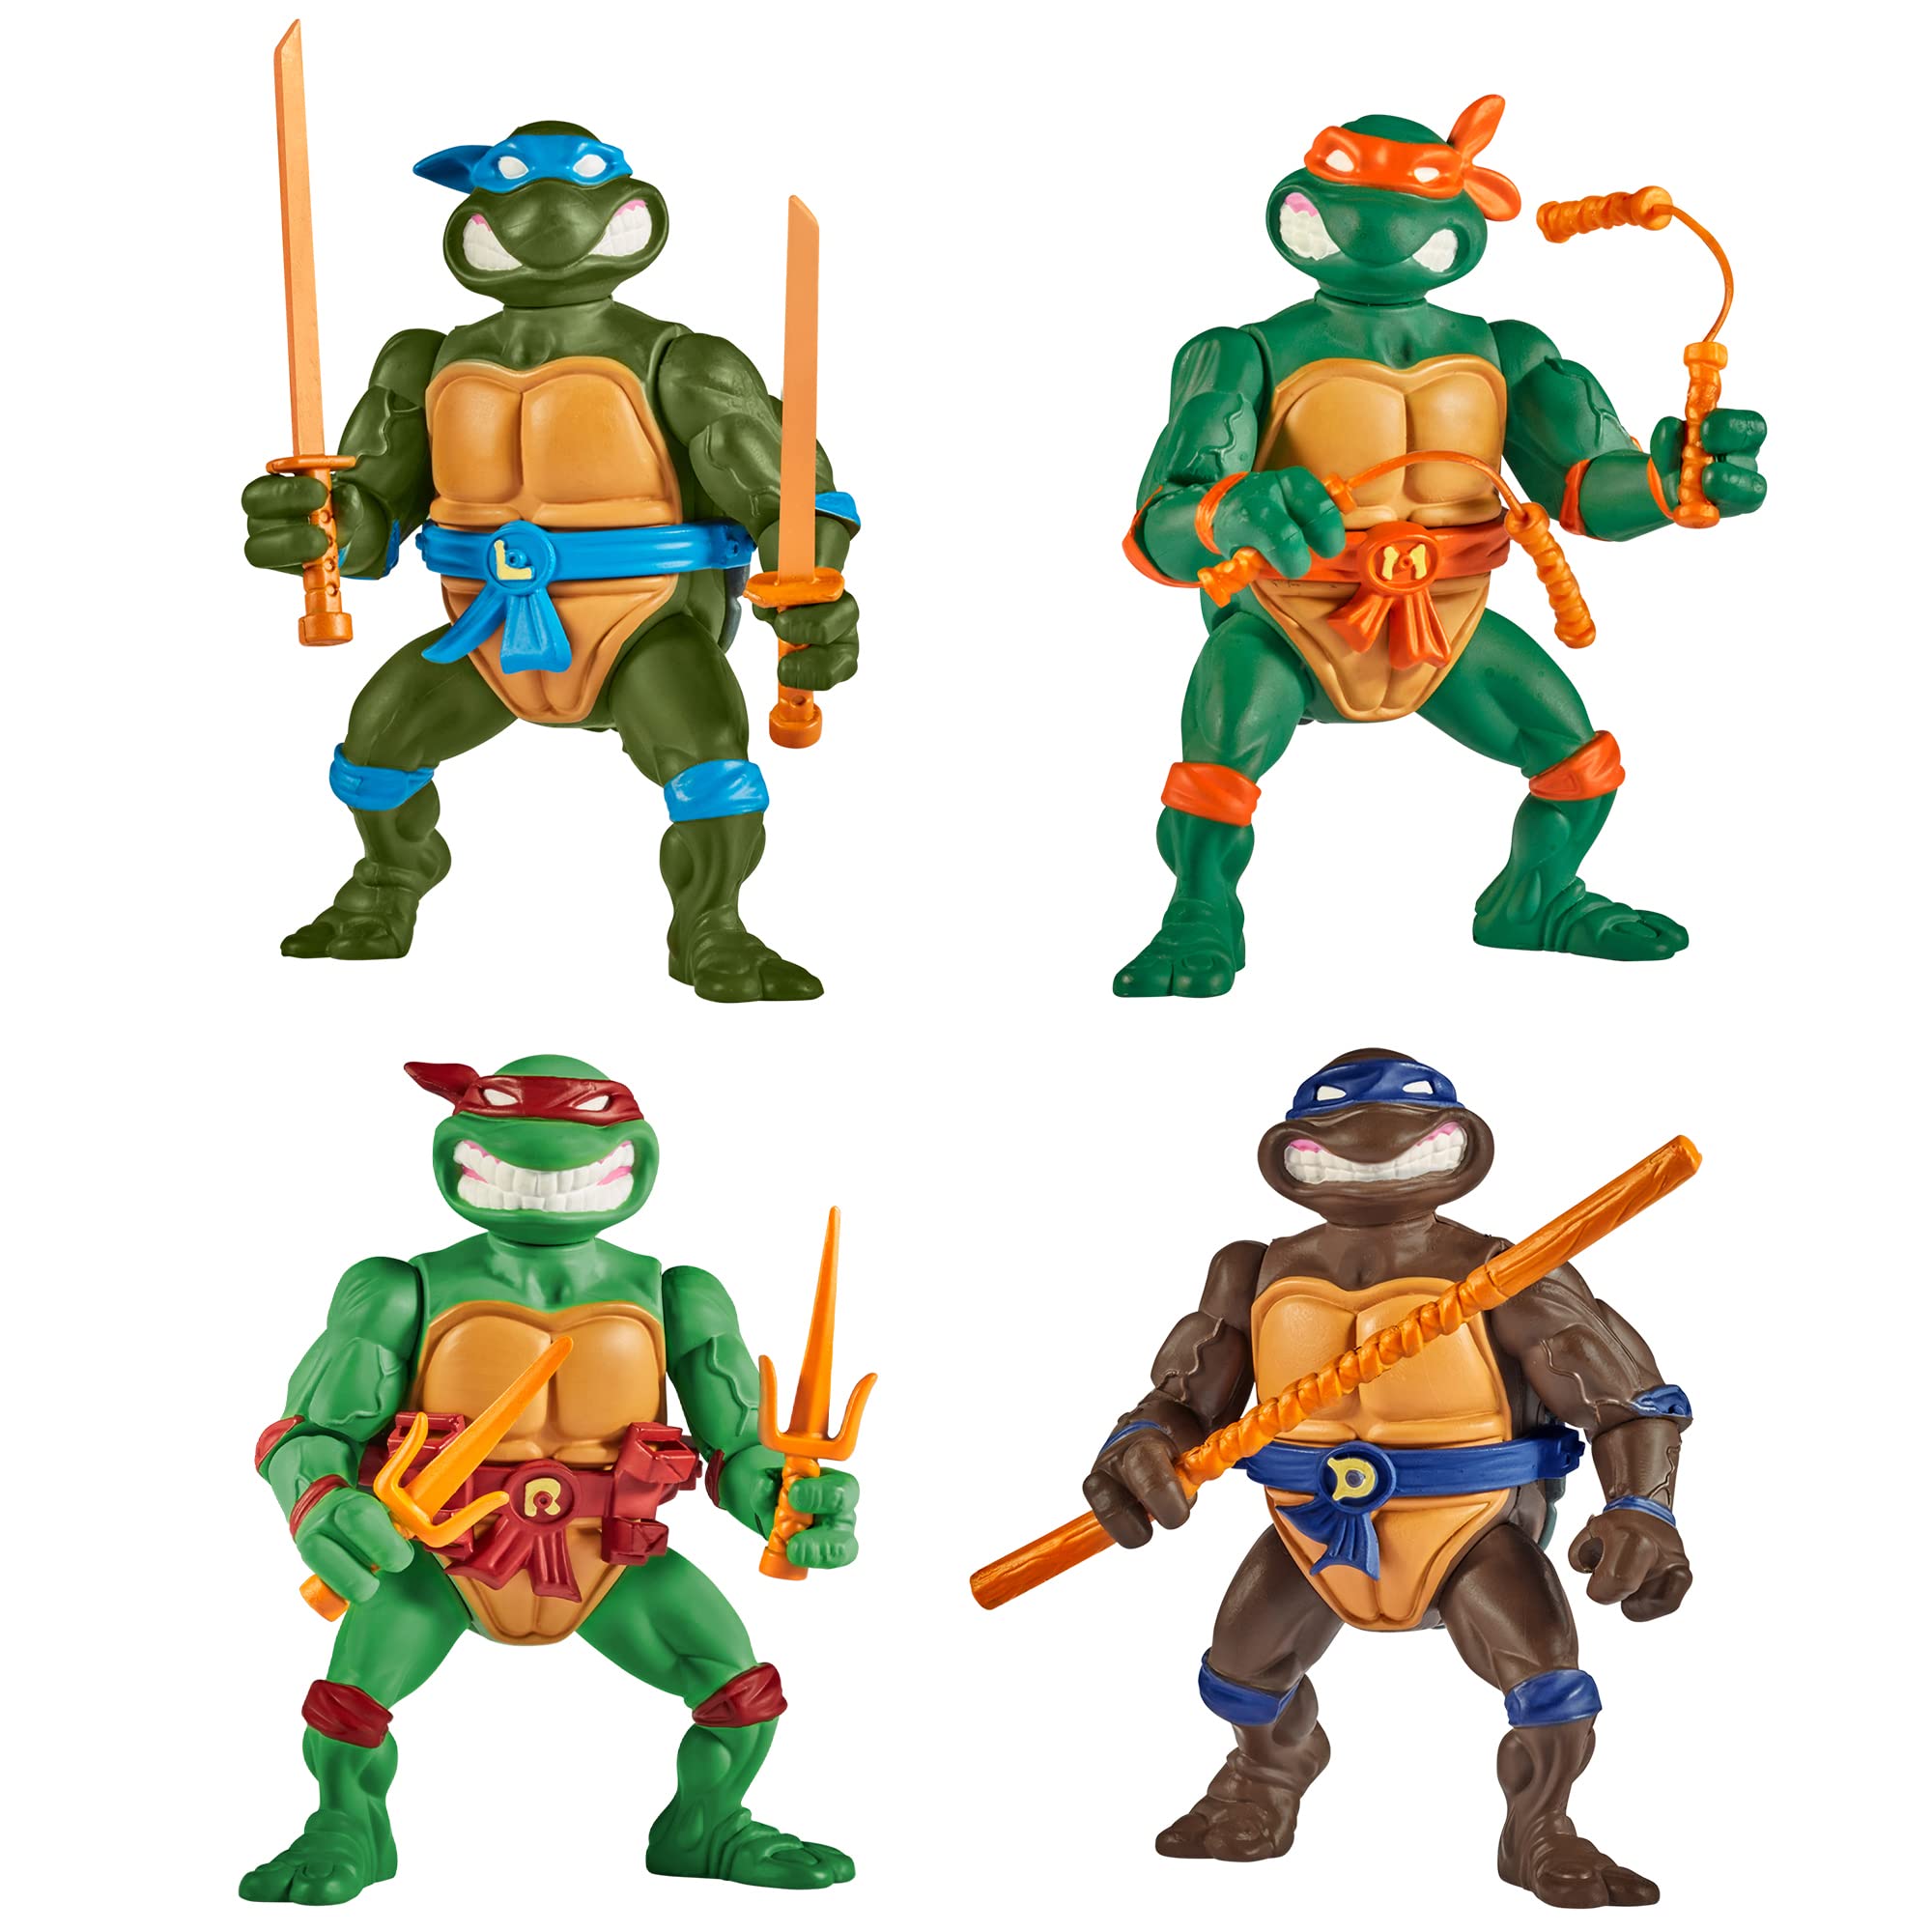 Teenage Mutant Ninja Turtles: Classic 4